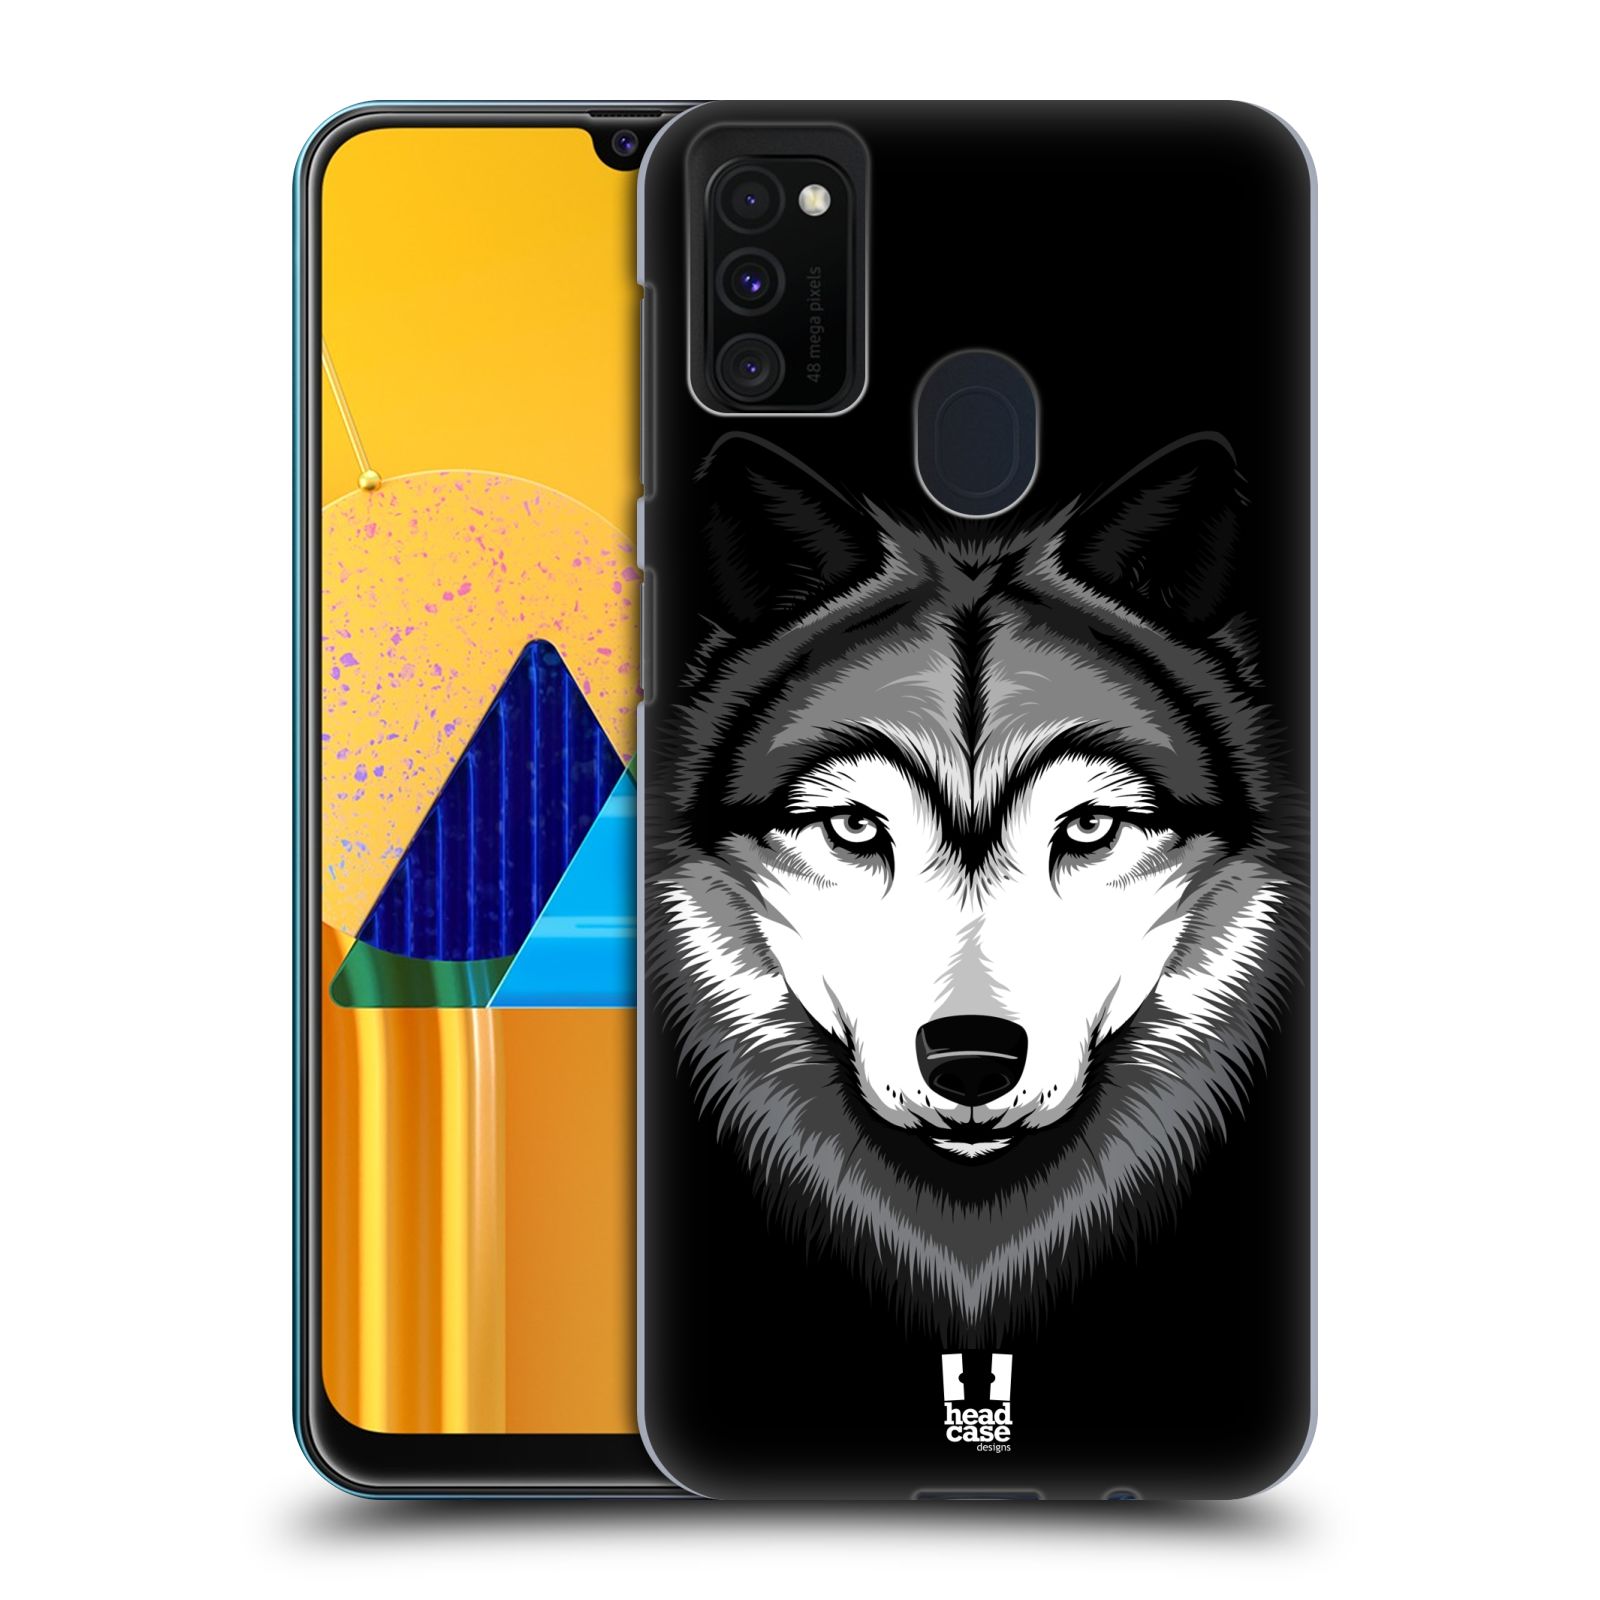 Plastový obal HEAD CASE na mobil Samsung Galaxy M30s vzor Zvíře kreslená tvář 2 vlk